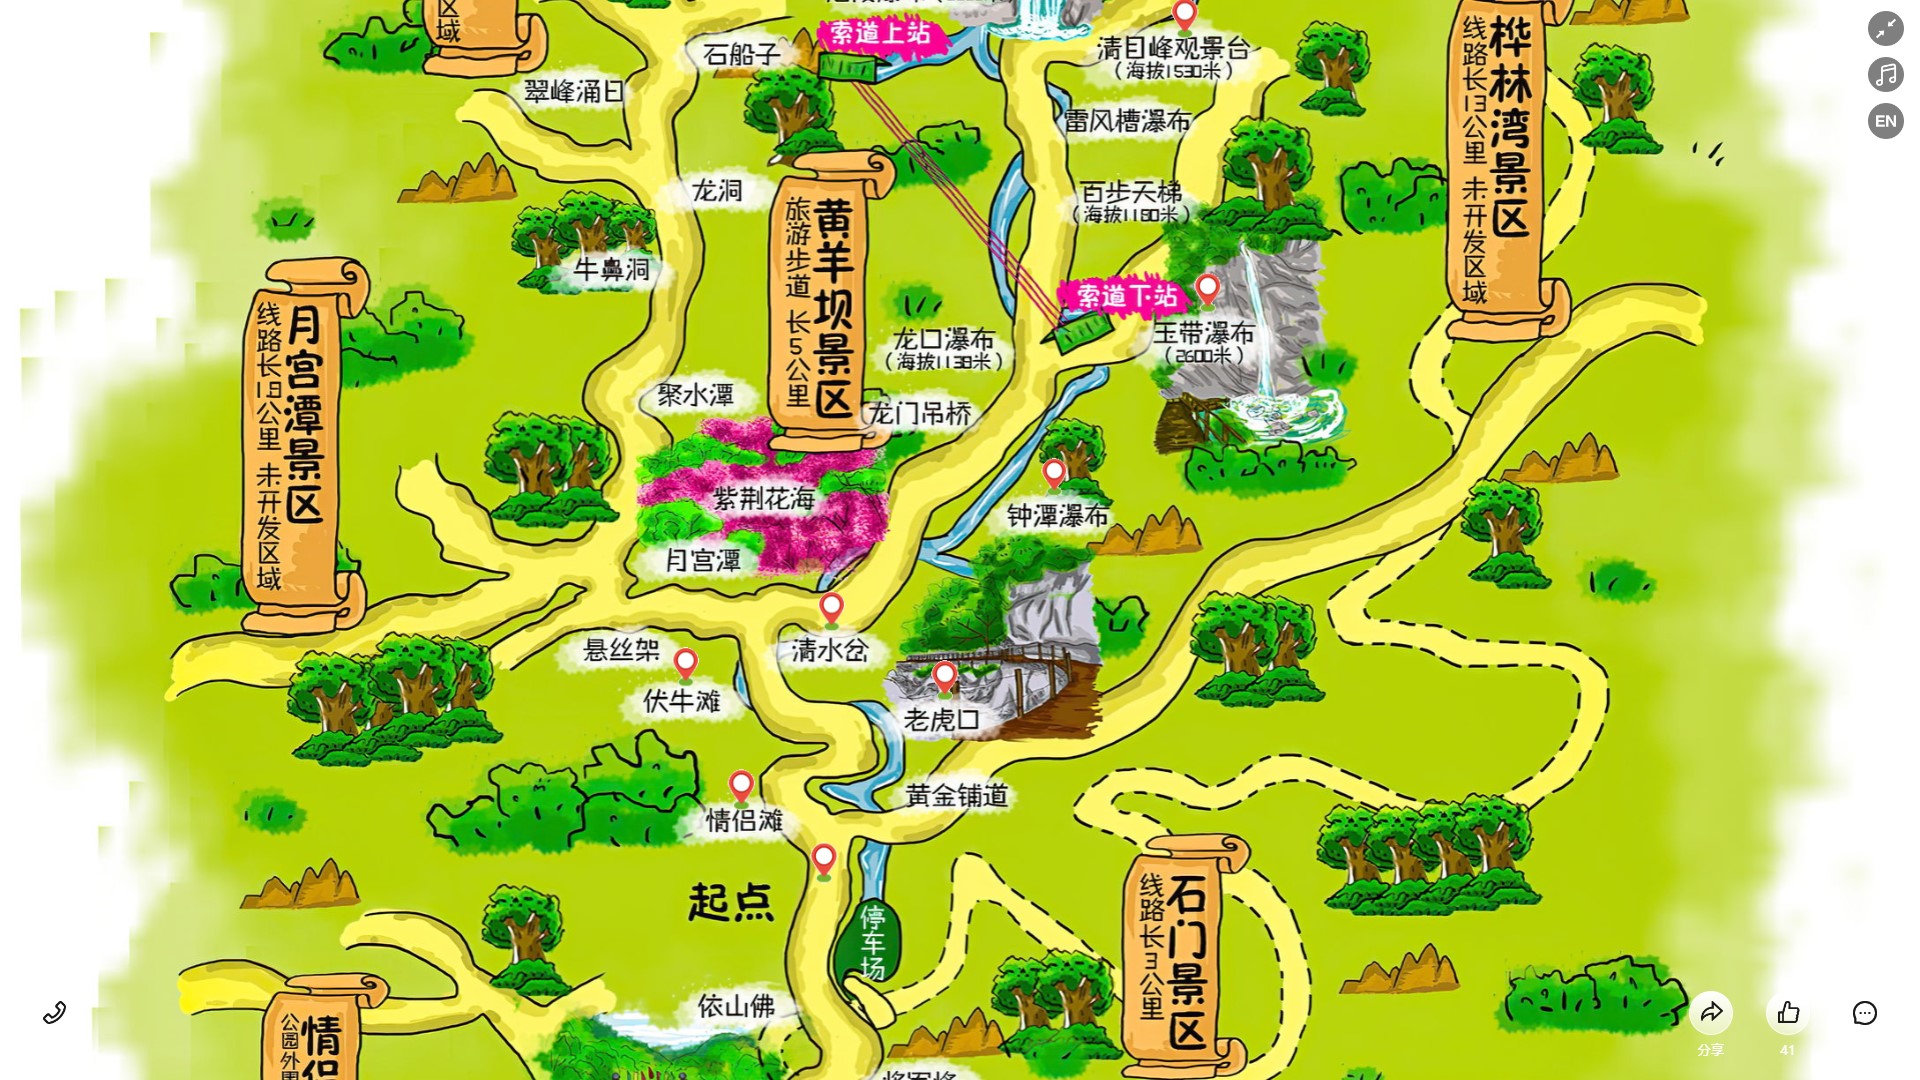 吴川景区导览系统